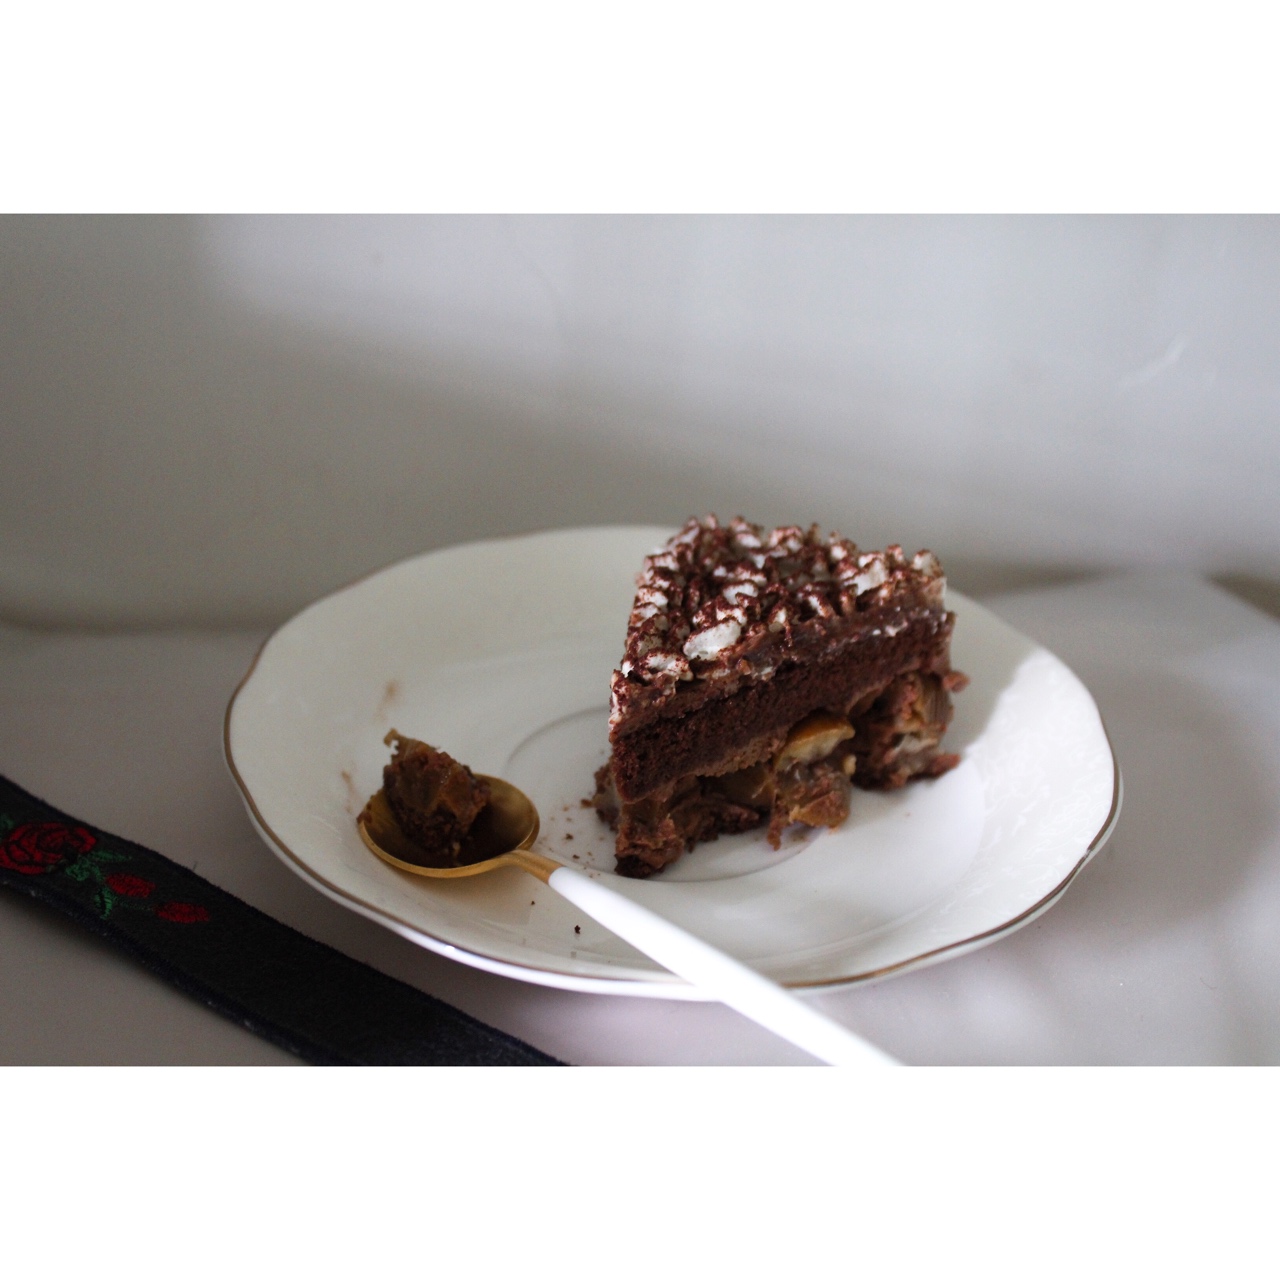 熊谷裕子-巧克力提诺栗子蛋糕